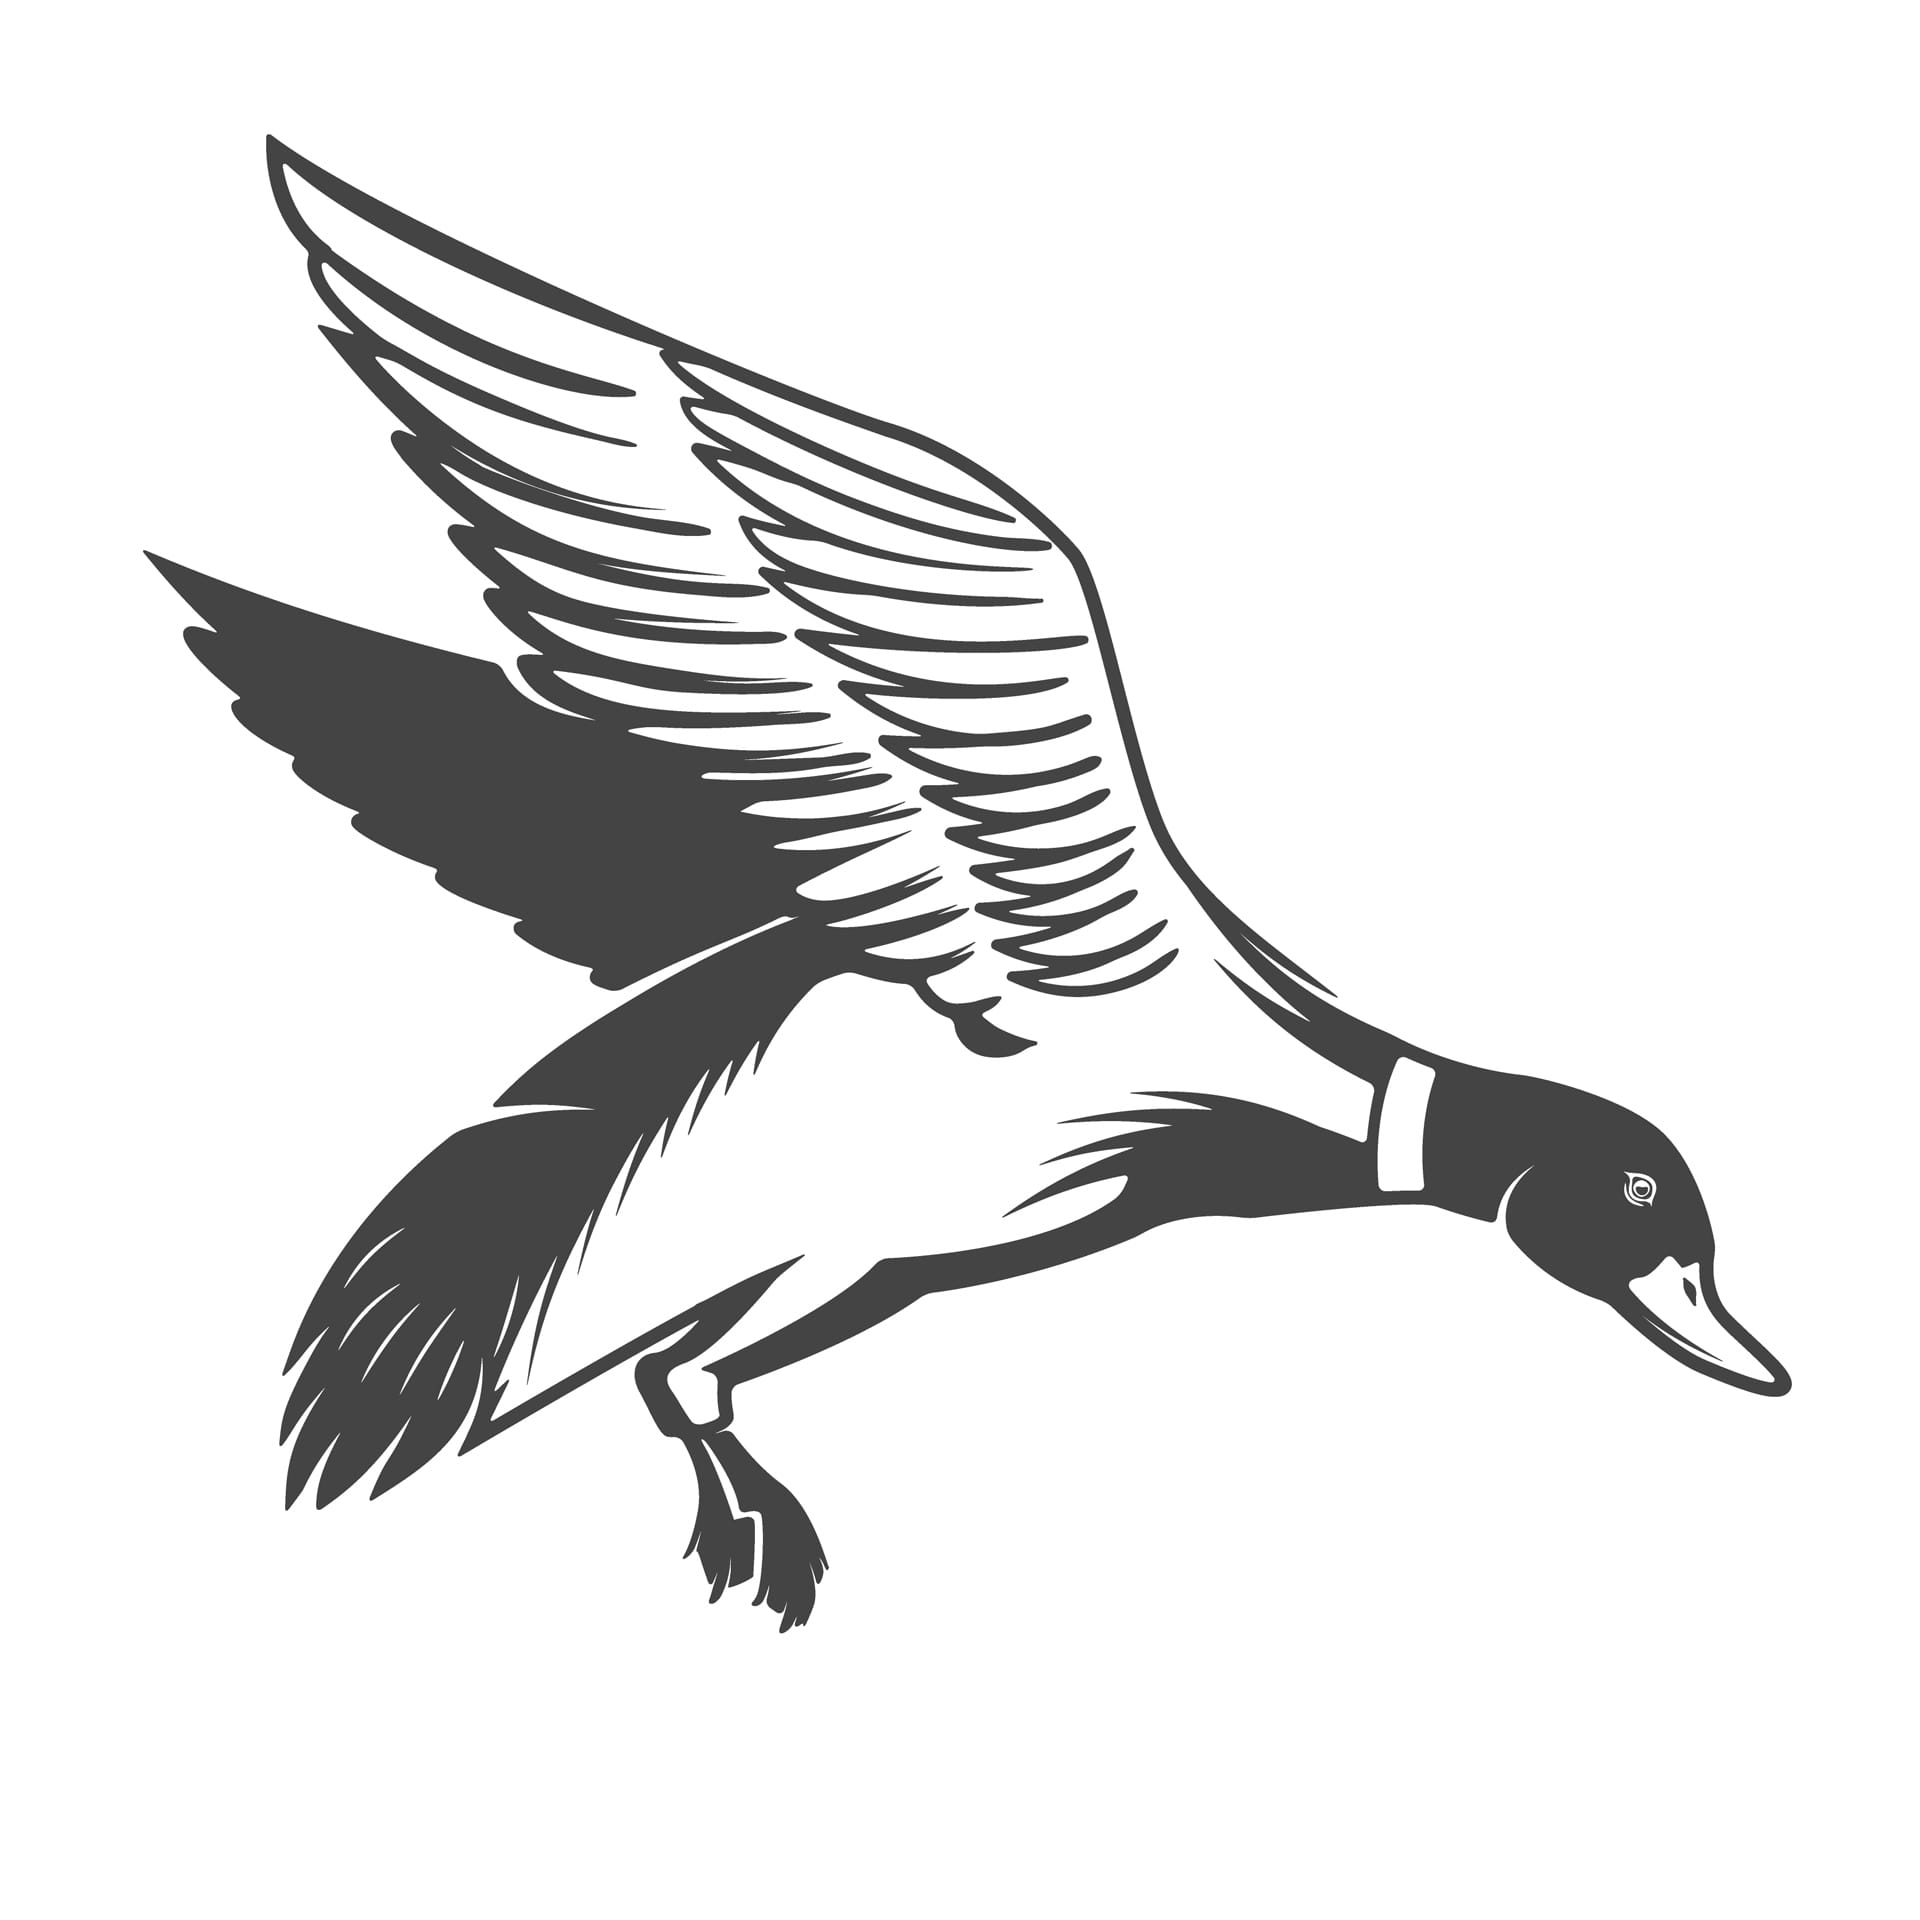 Wild ducks icons elements logo label emblem image